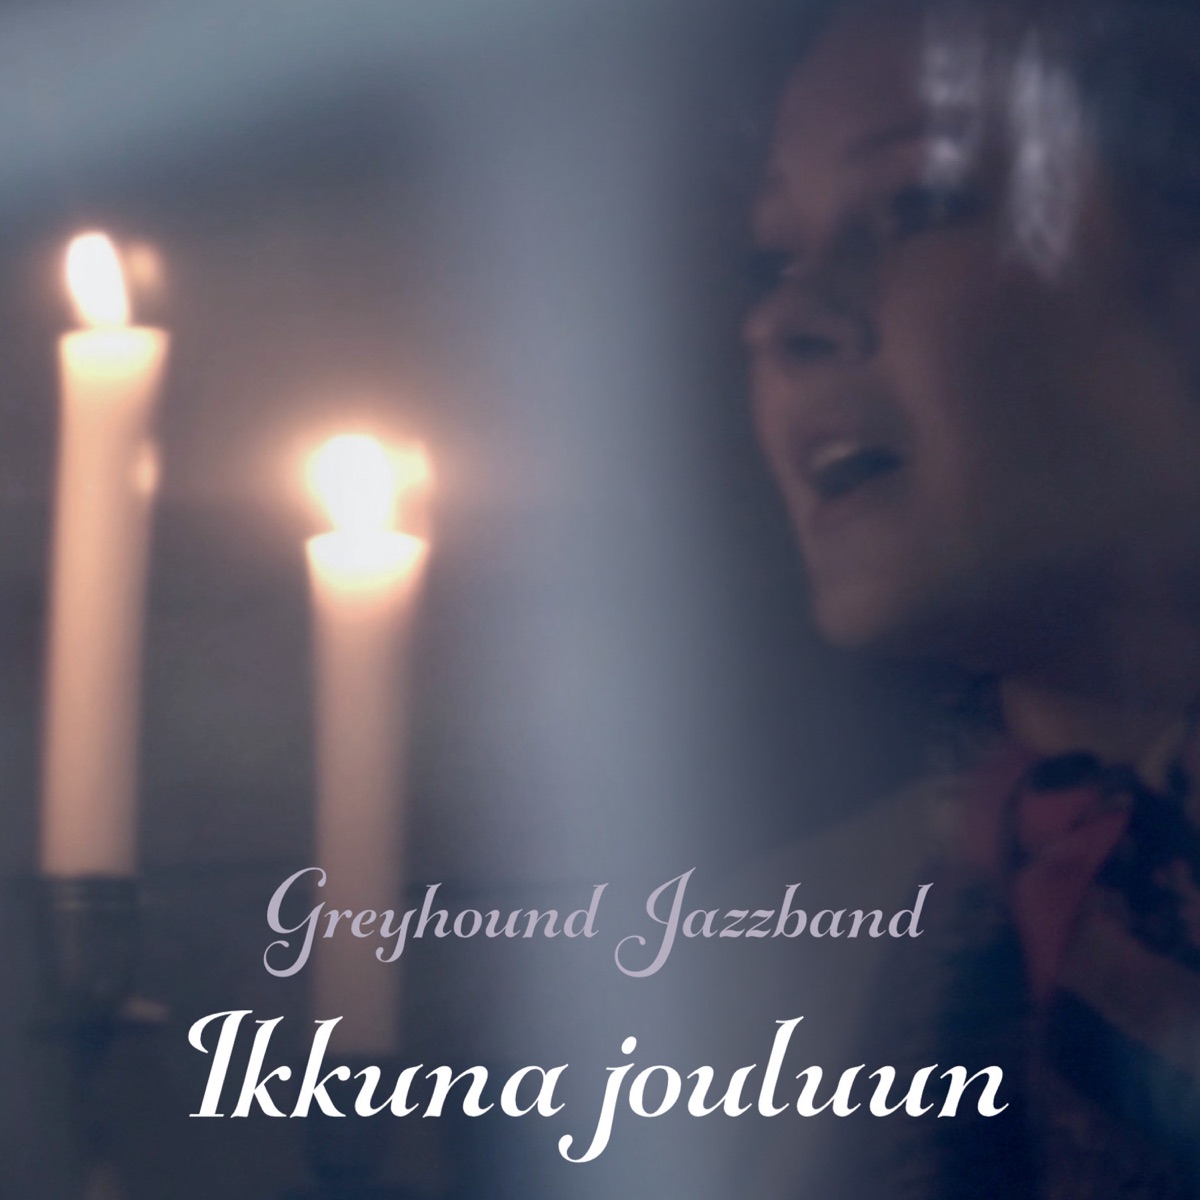 Ikkuna Jouluun - Album by Greyhound Jazzband - Apple Music